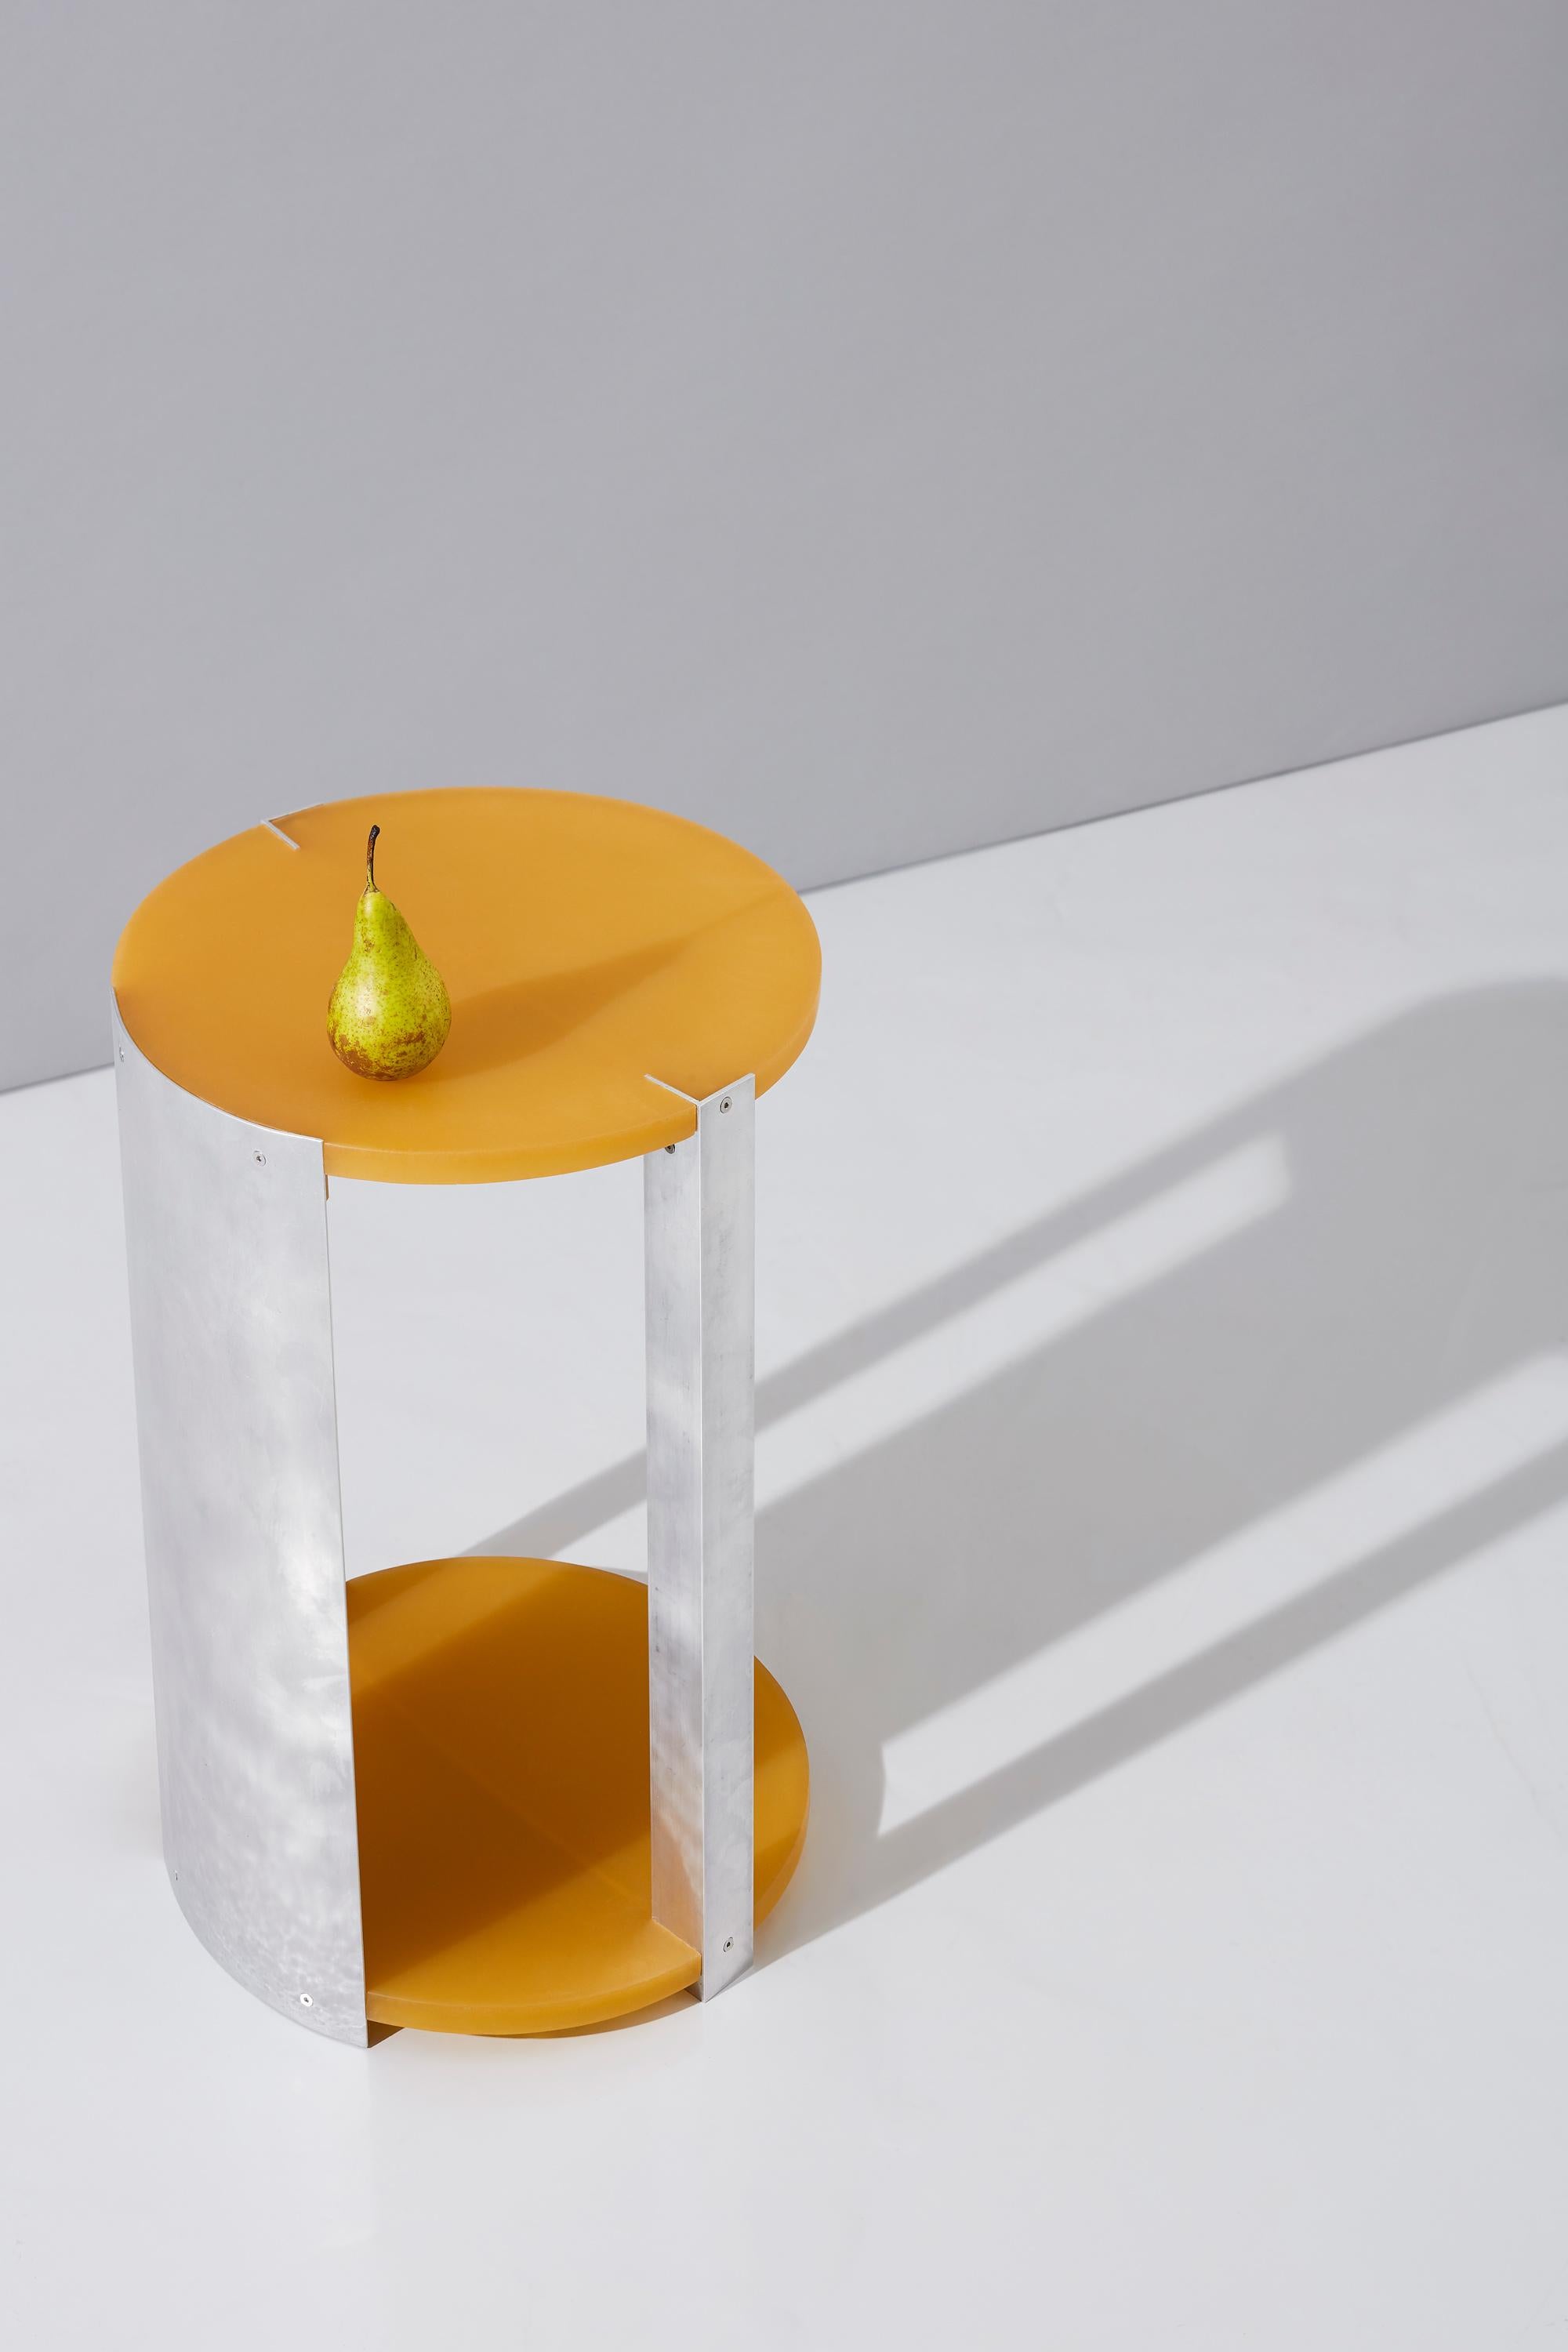 Die Tische, die privat für ein Londoner Wohnprojekt in Auftrag gegeben wurden, sind von den Werken Gaetano Pesces inspiriert und vereinen diese mit einer industriellen Schlichtheit. Sie bestehen aus handelsüblichen Materialien wie Aluminiumprofilen,